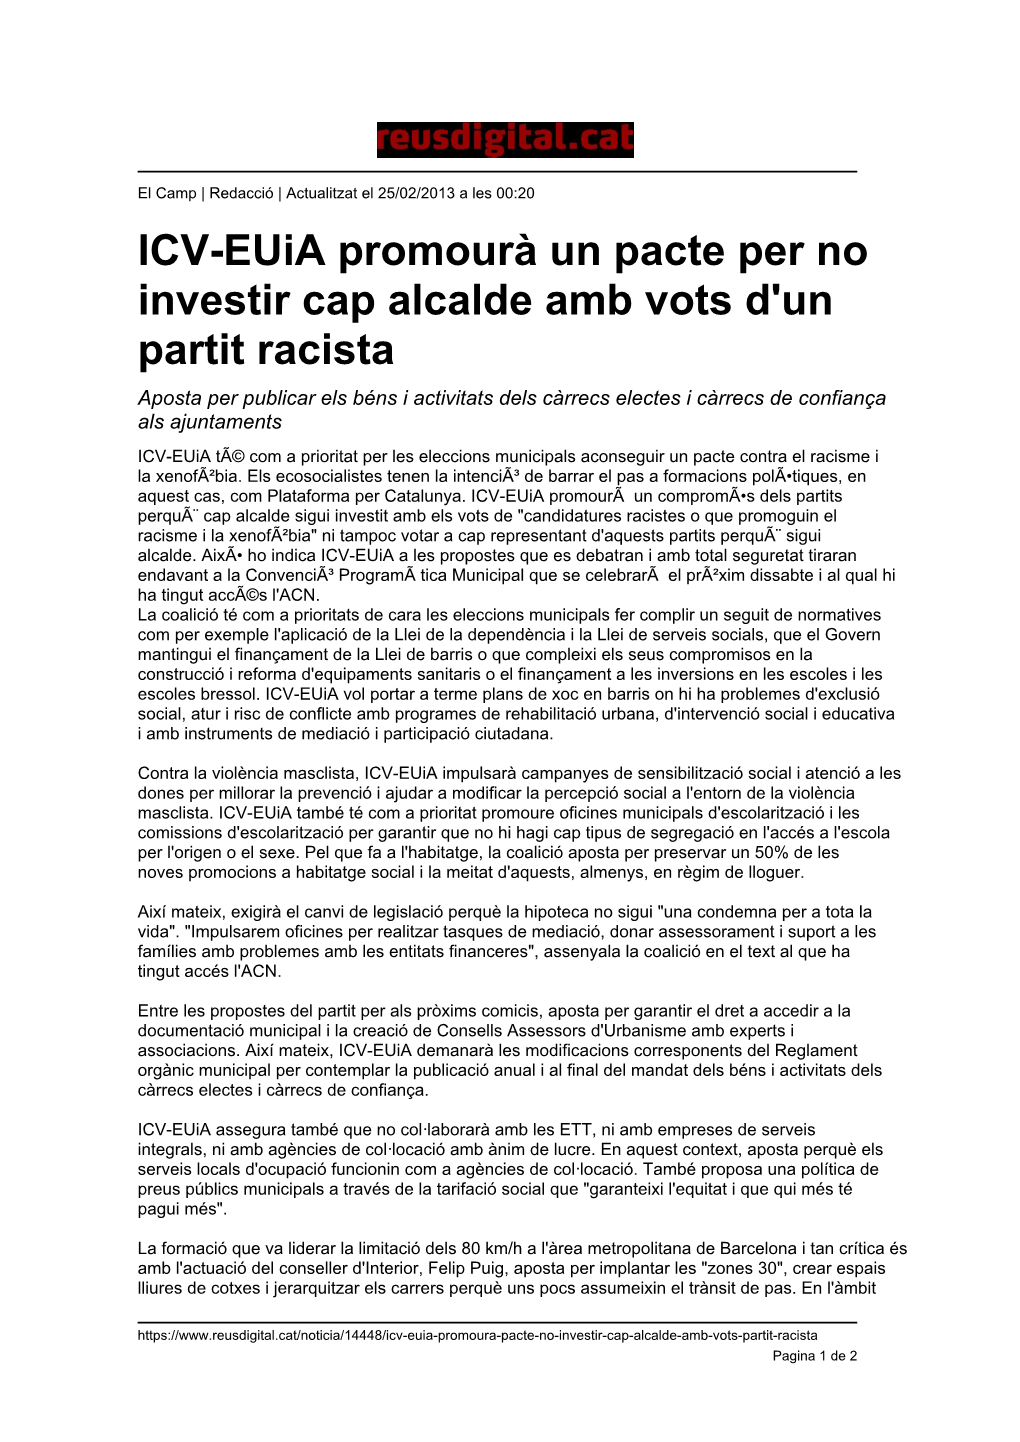 ICV-Euia Promourà Un Pacte Per No Investir Cap Alcalde Amb Vots D'un